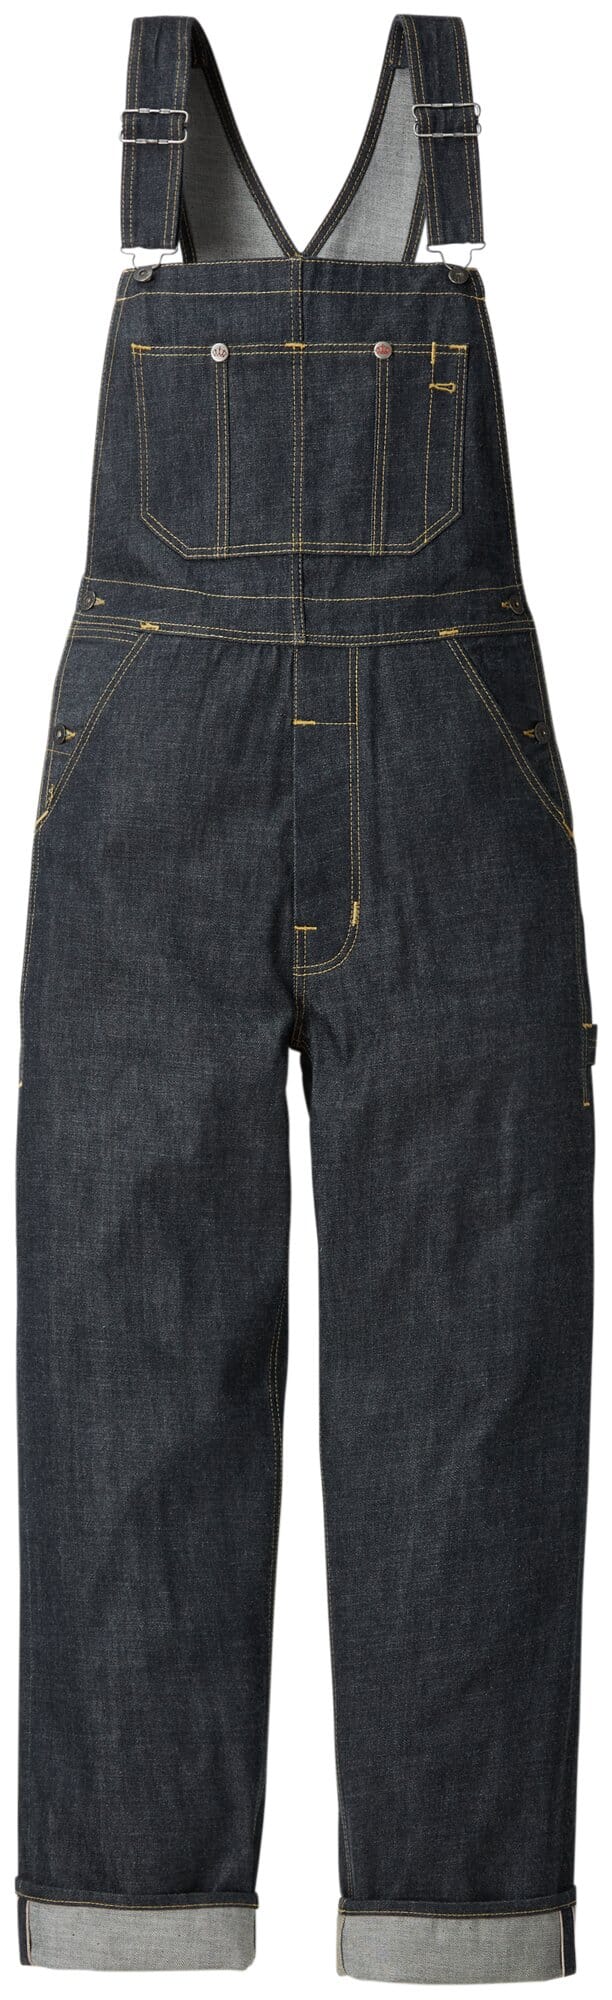 4607 Jeans-Latzhose,Arbeitskleidung,Latzhose,Arbeitshose,Eiko Denim-Workwear 